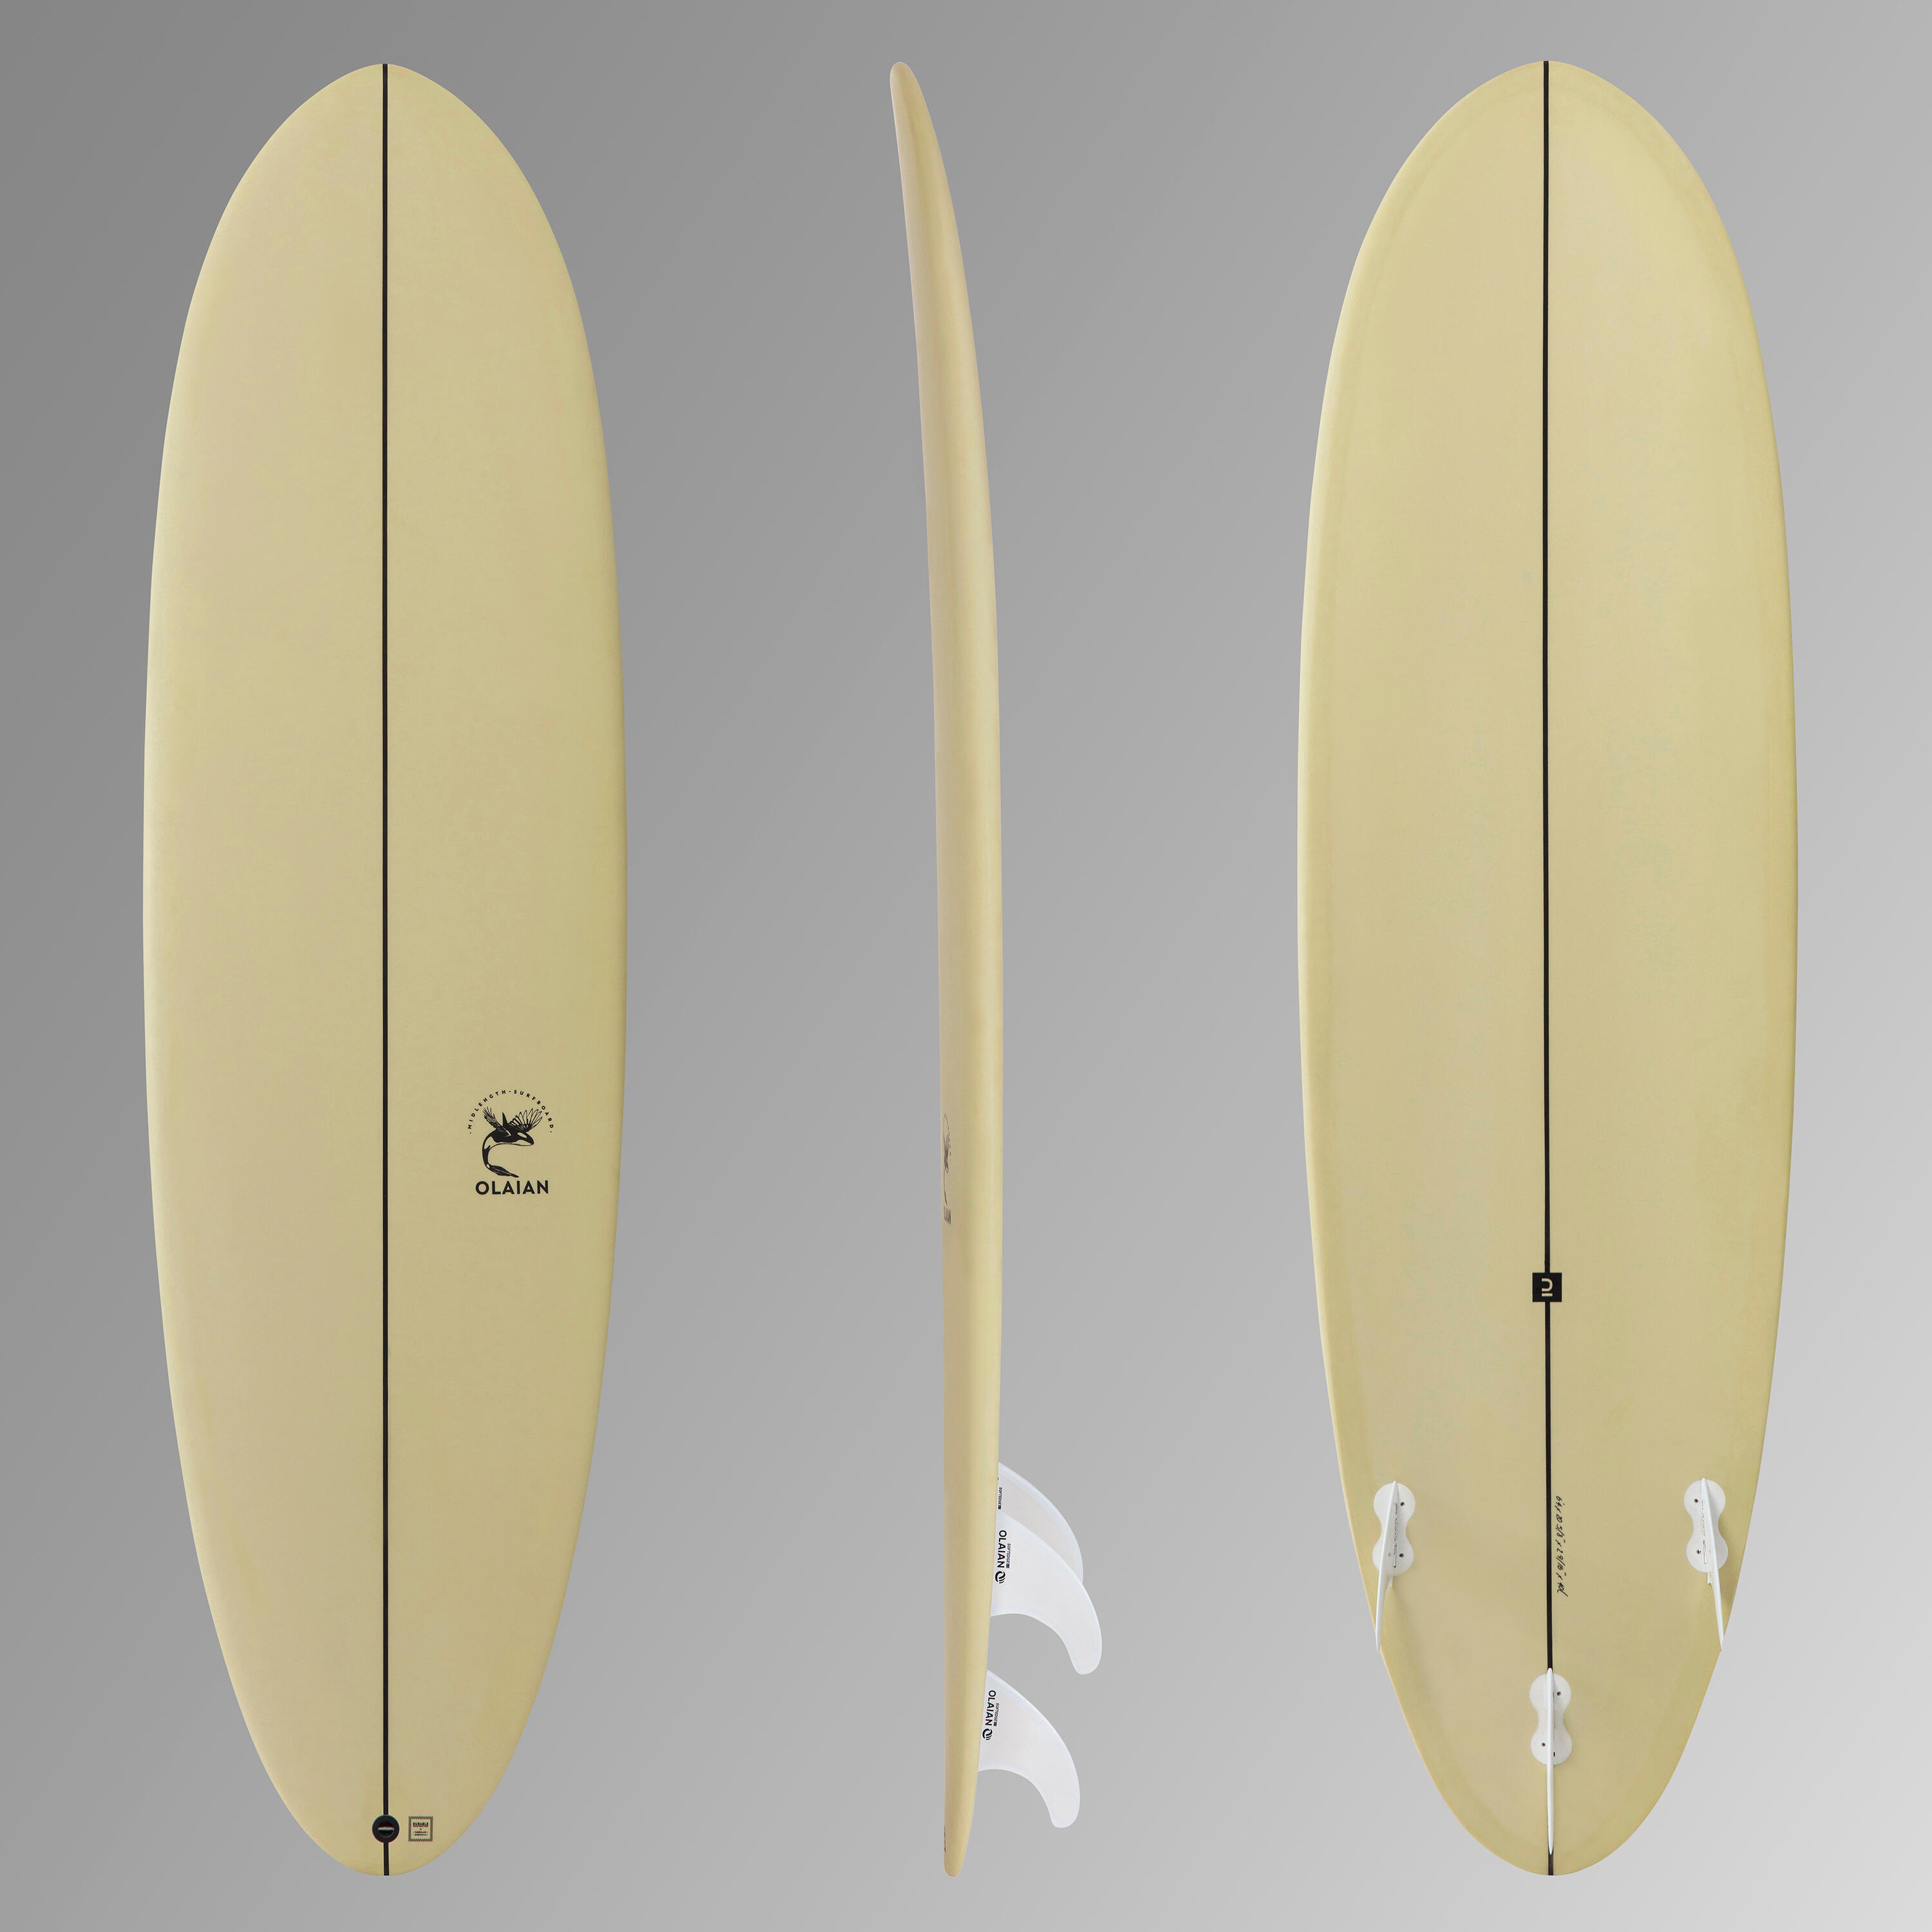 Placă surf 500 Hybride 6’4” 3 înotătoare incluse 500